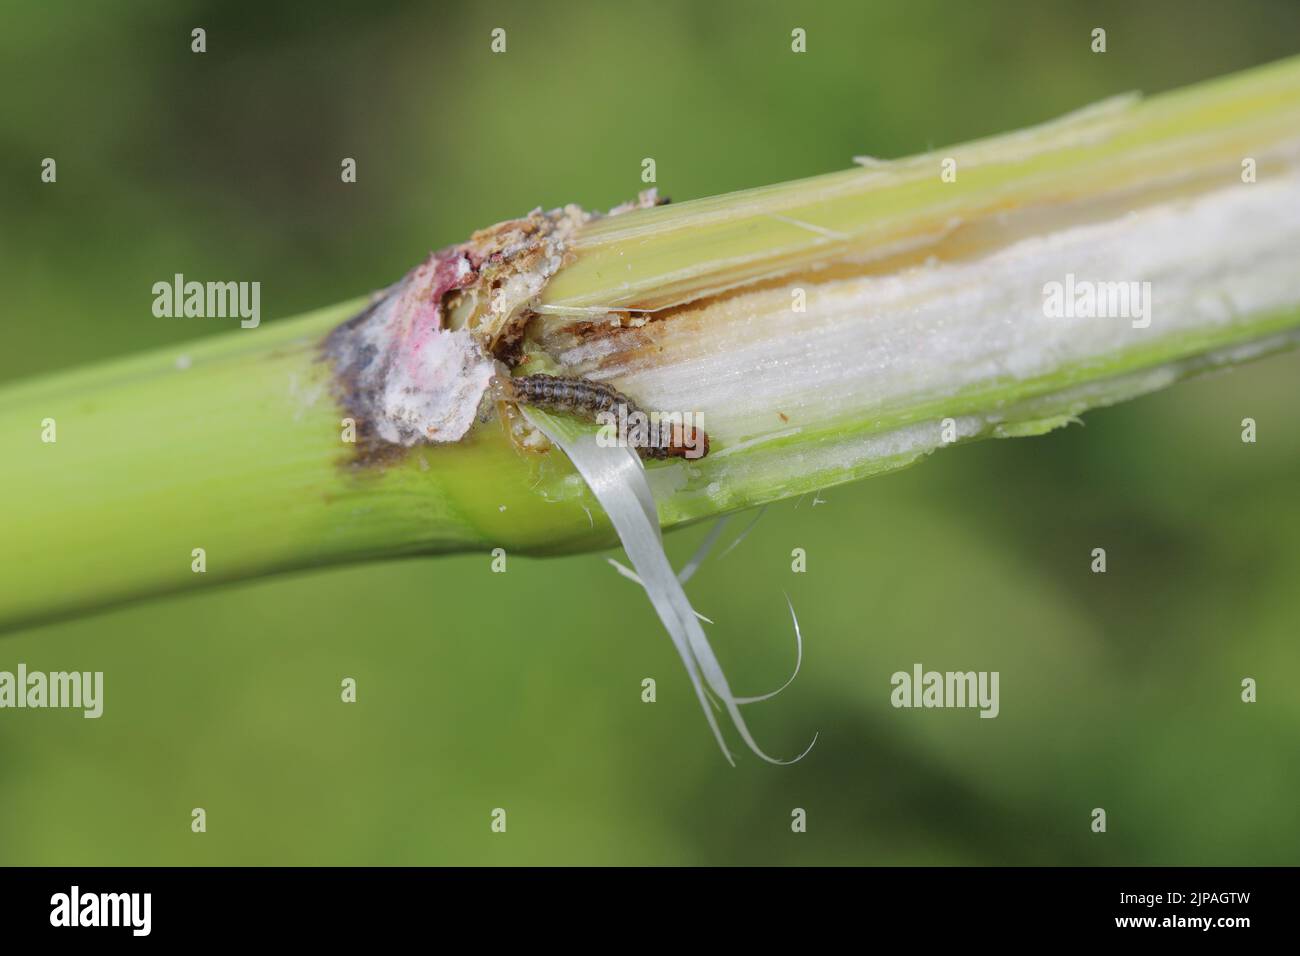 Mais, Maispflanze, die durch die Raupe des europäischen Maisbohrers (Ostrinia nubilalis) beschädigt wurde. Stockfoto